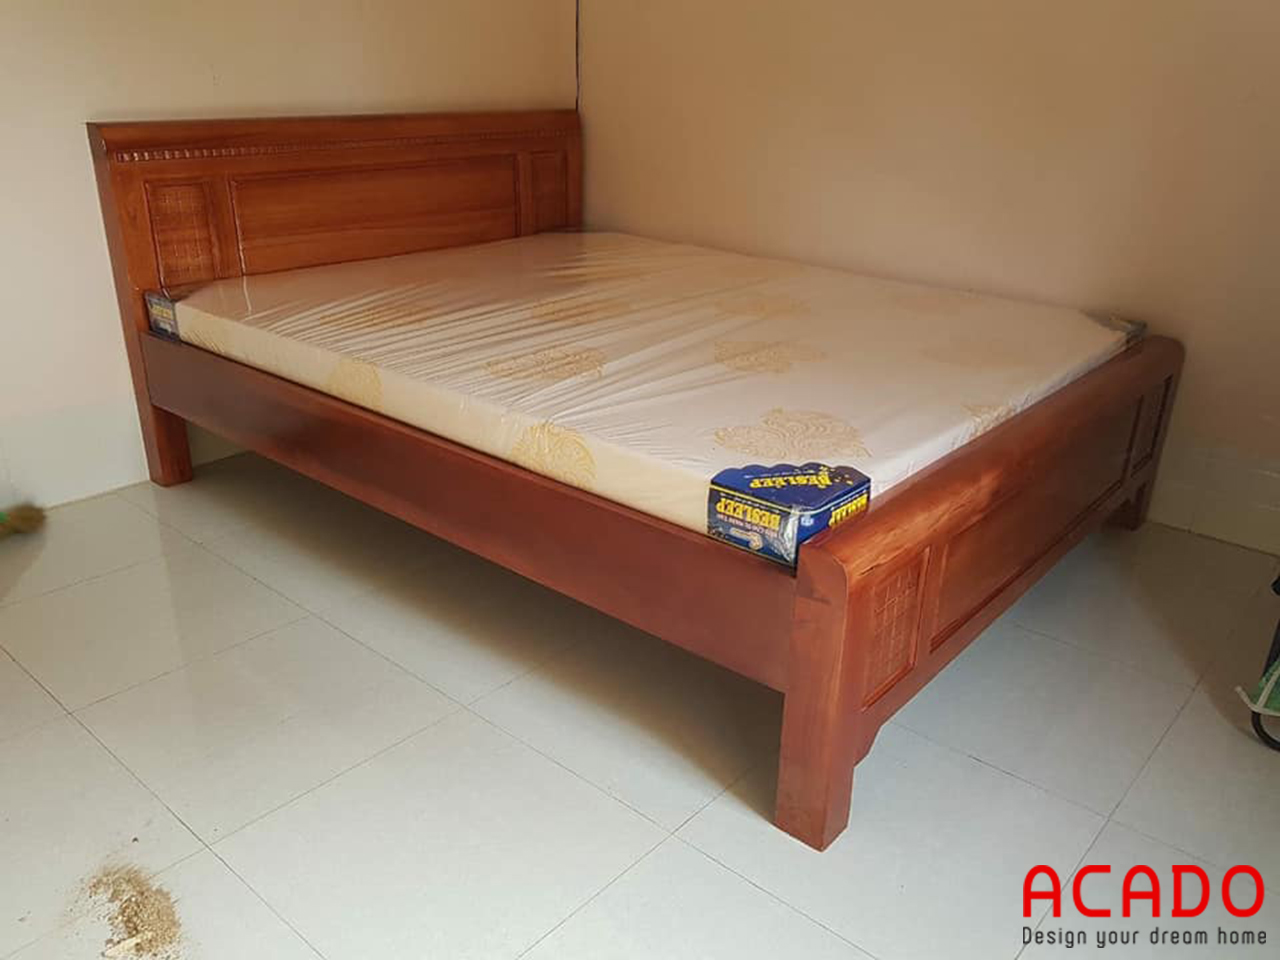 Giường ngủ gỗ xoan đào kiểu dáng cổ điển